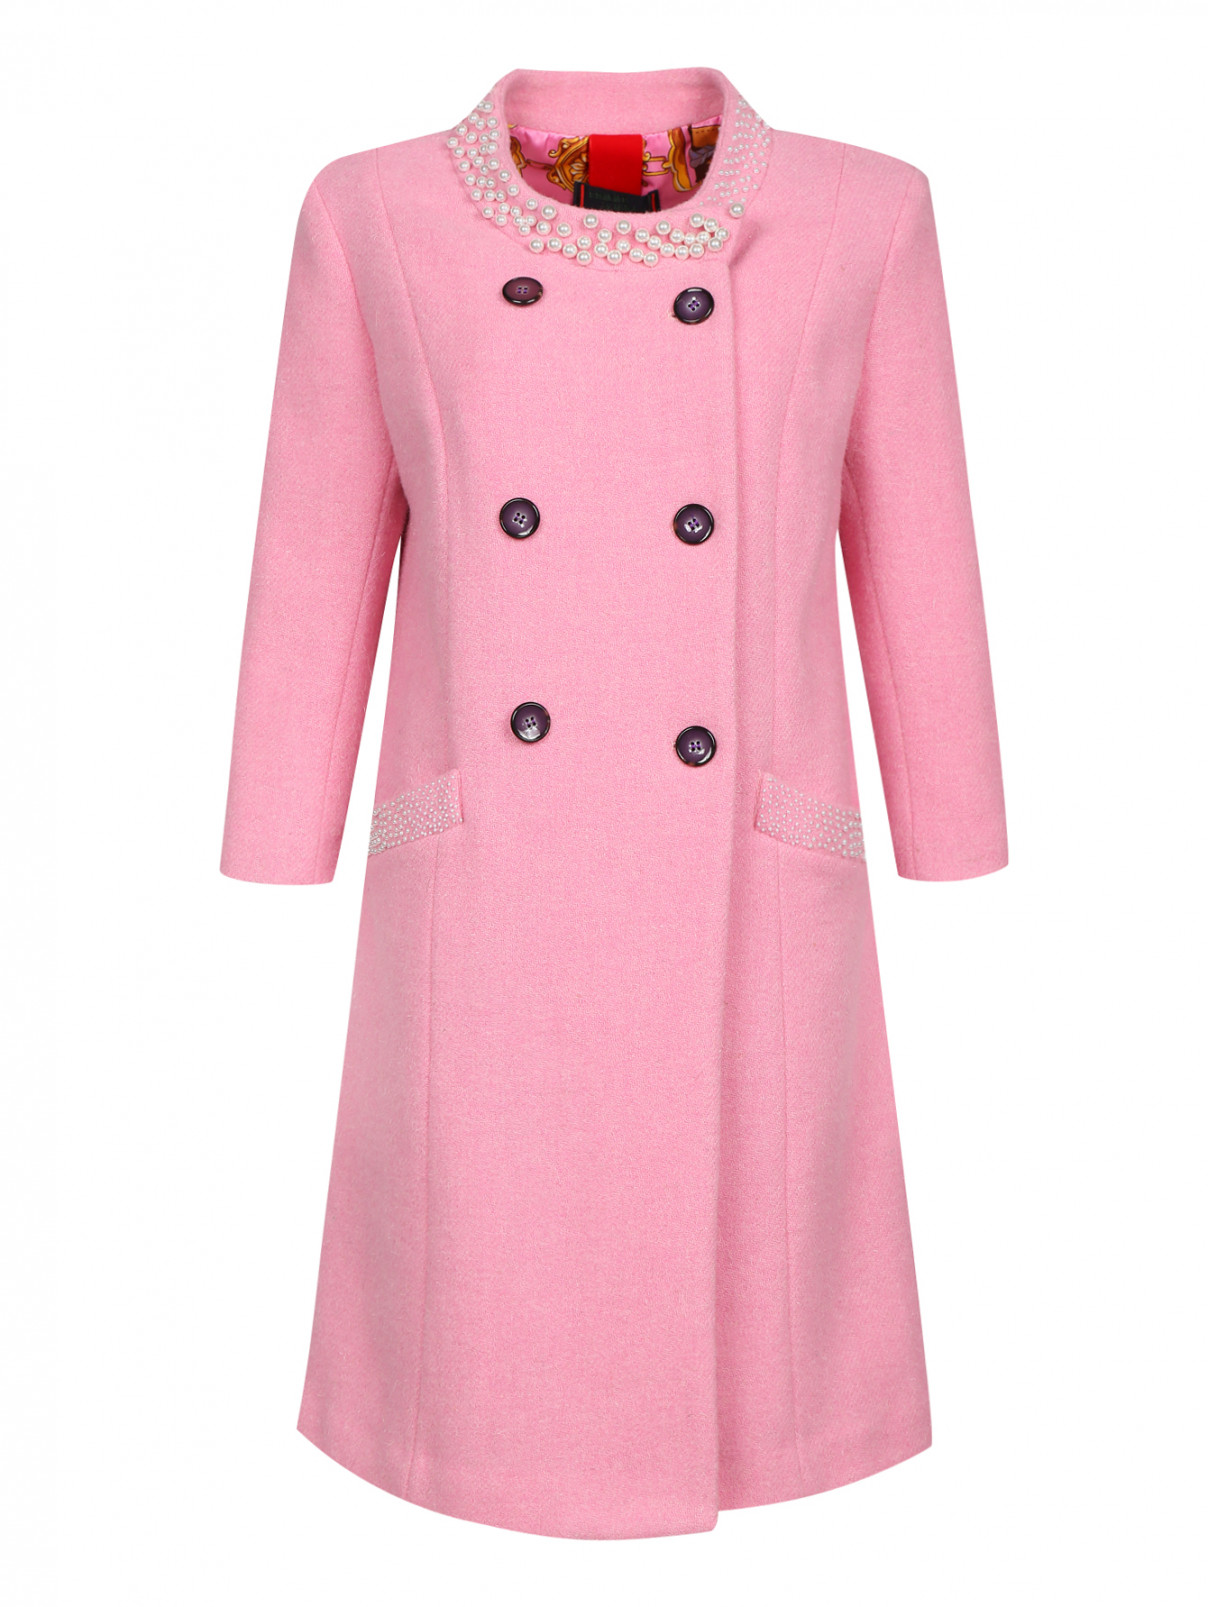 Пальто из шерсти с аппликаций из бусин Femme by Michele R.  –  Общий вид  – Цвет:  Розовый